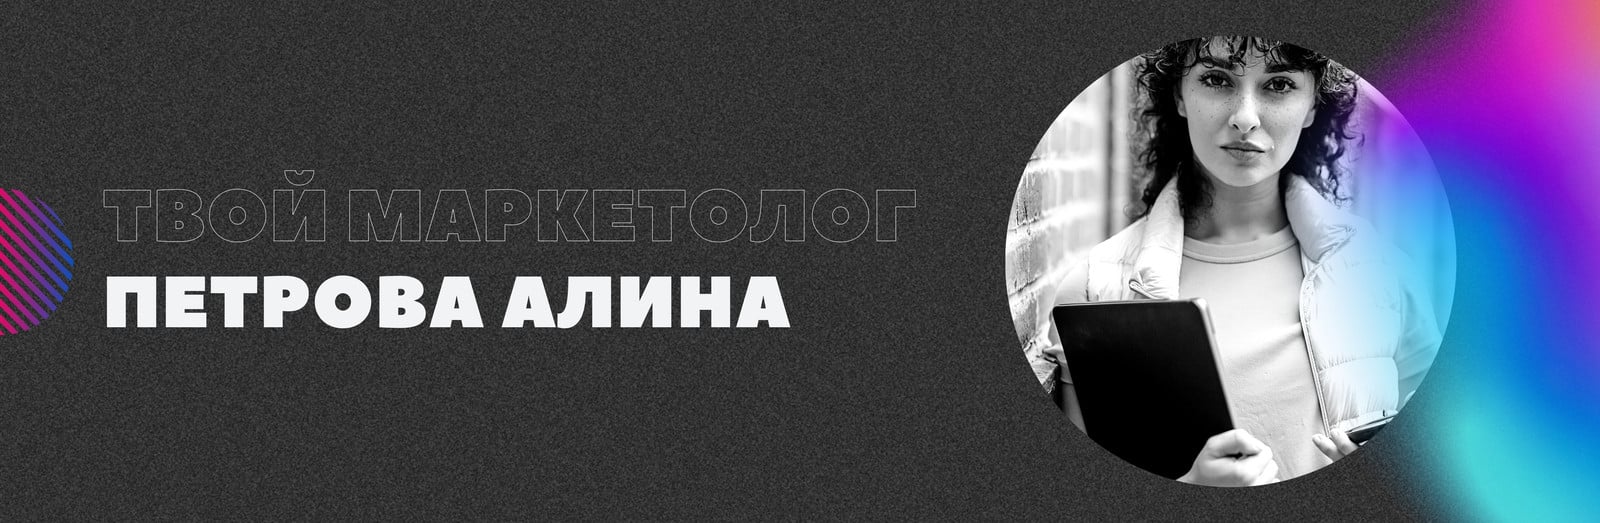 Оформление группы ВКонтакте: подробное руководство